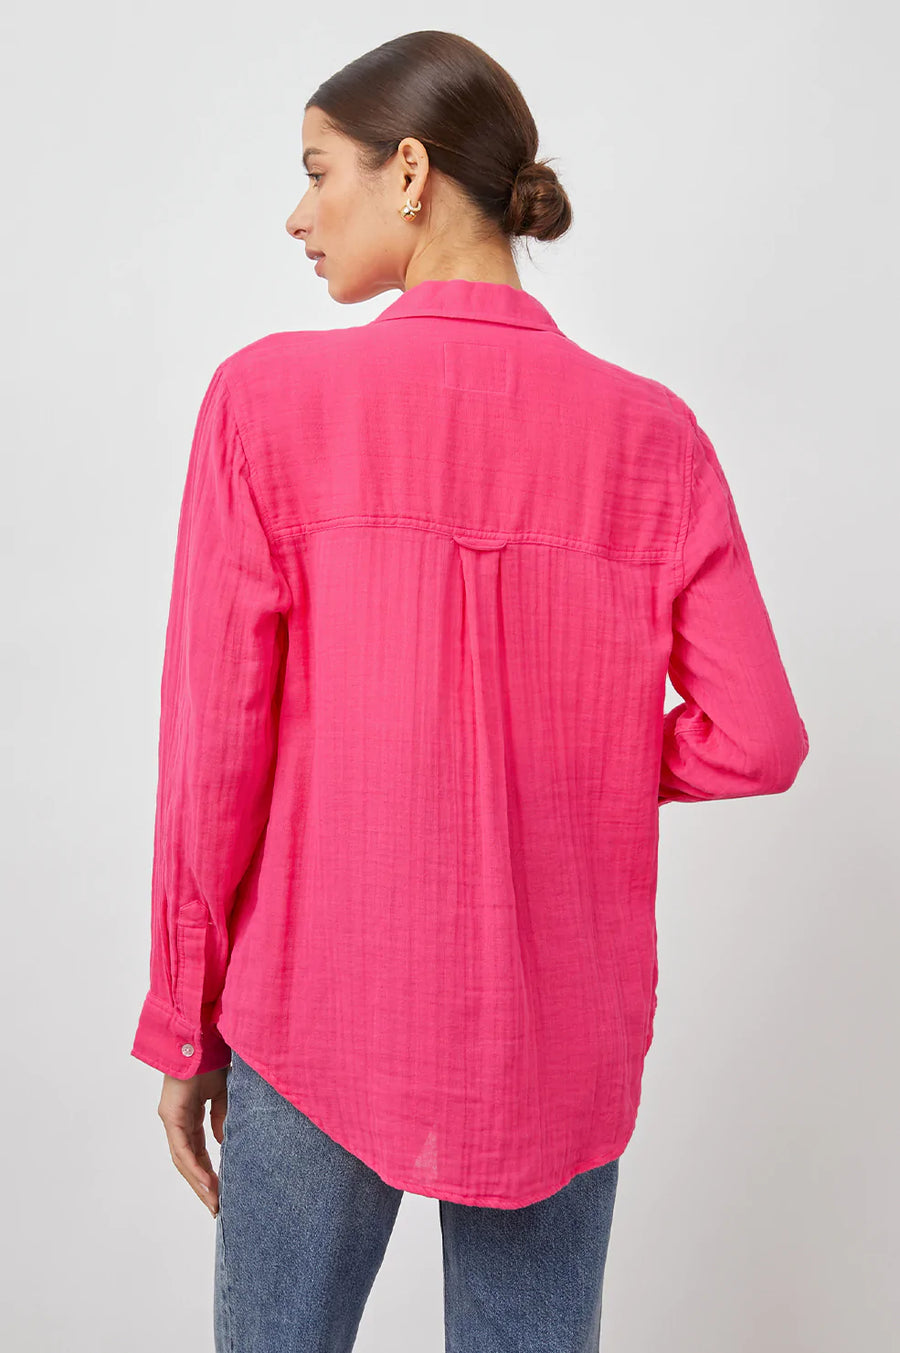 RAILS Ellis Shirt in Color: 